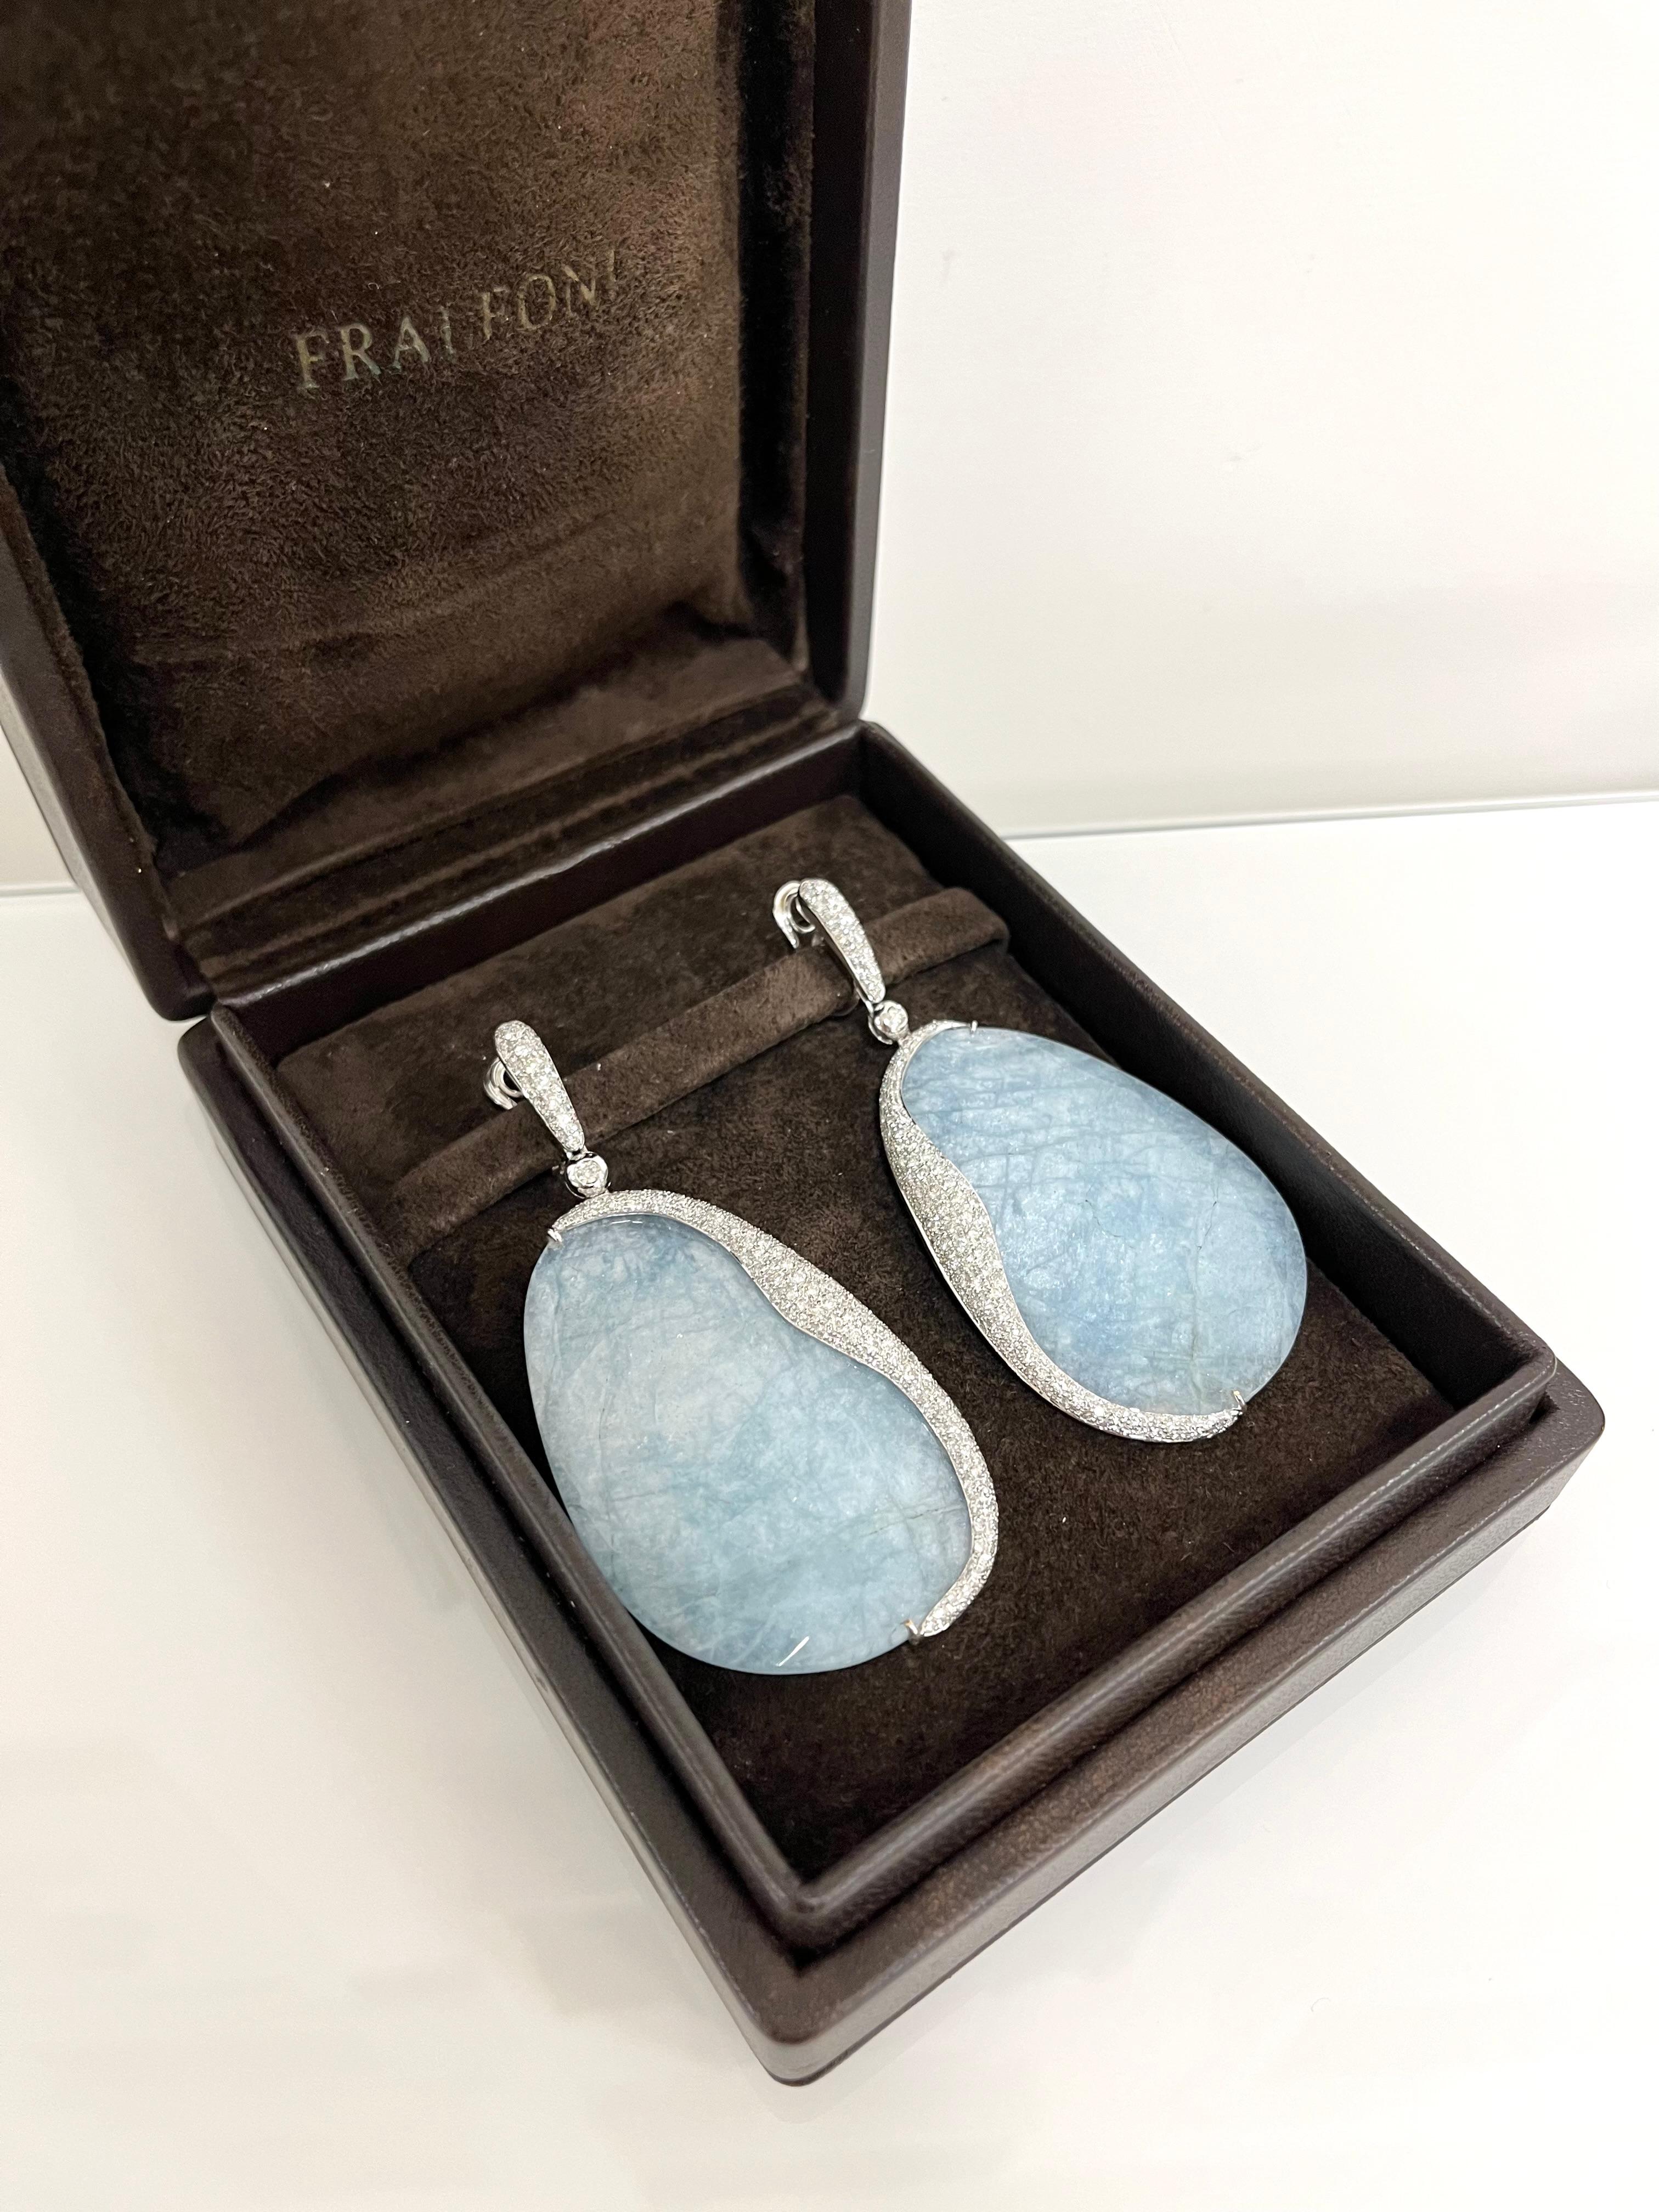 Modern Fraleoni 18 Kt. White Gold Diamond Aquamarine Earrings For Sale